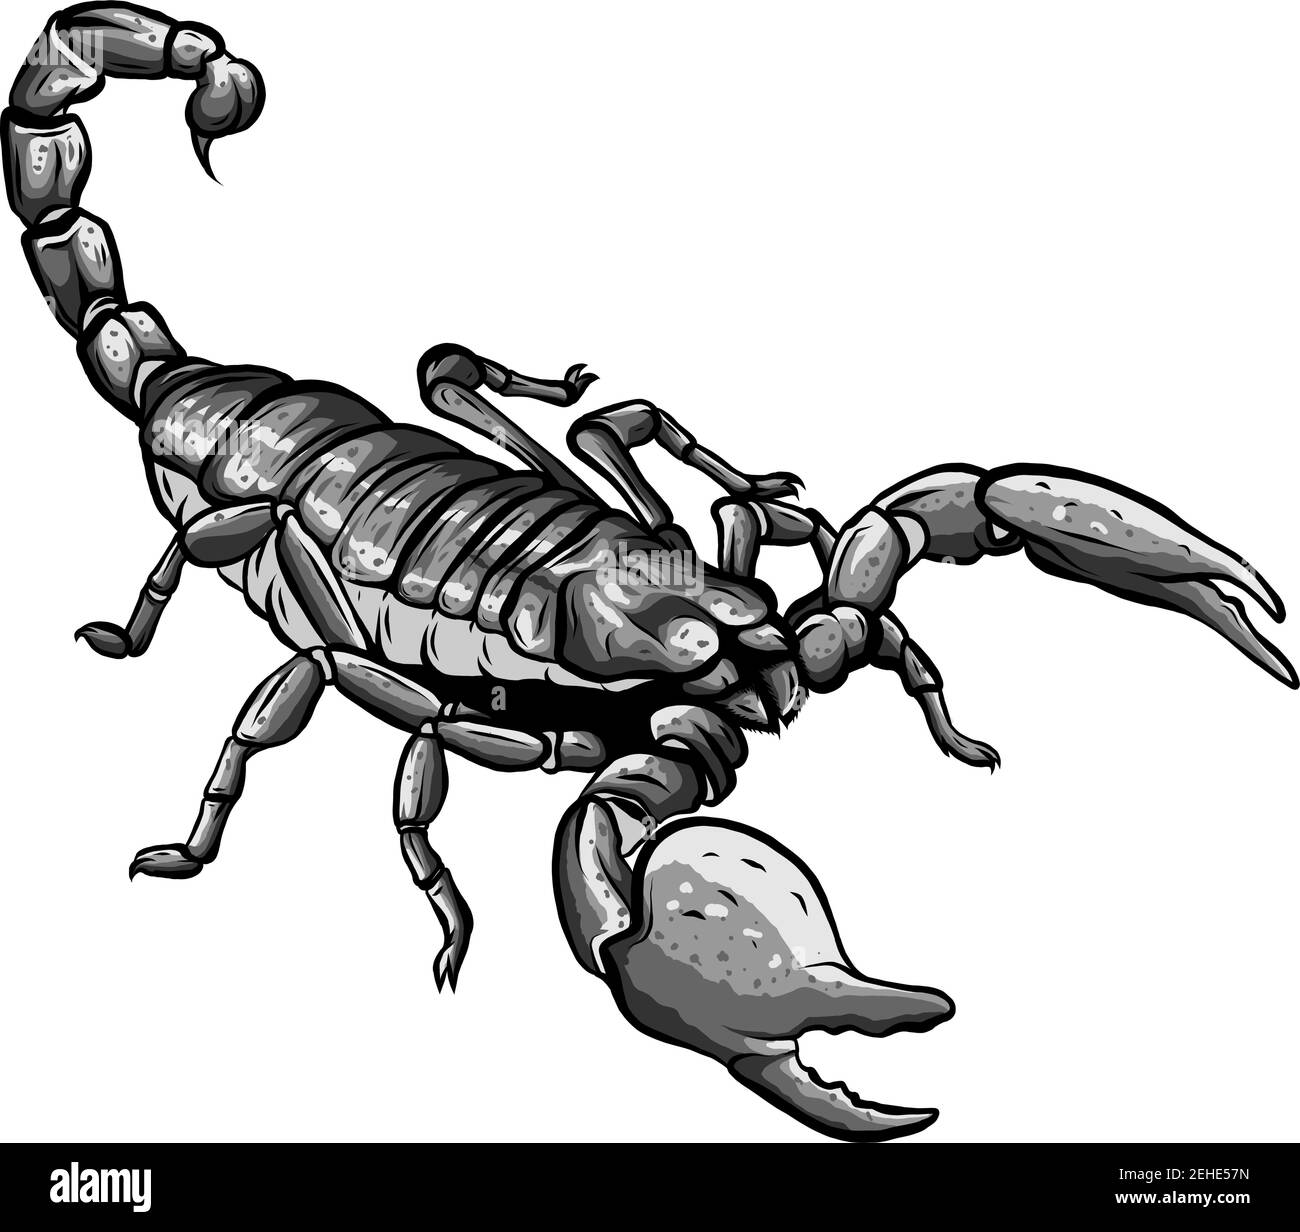 Illustrazione di scorpione arachnid insetto. Ideale per etimologia e materiali didattici Illustrazione Vettoriale